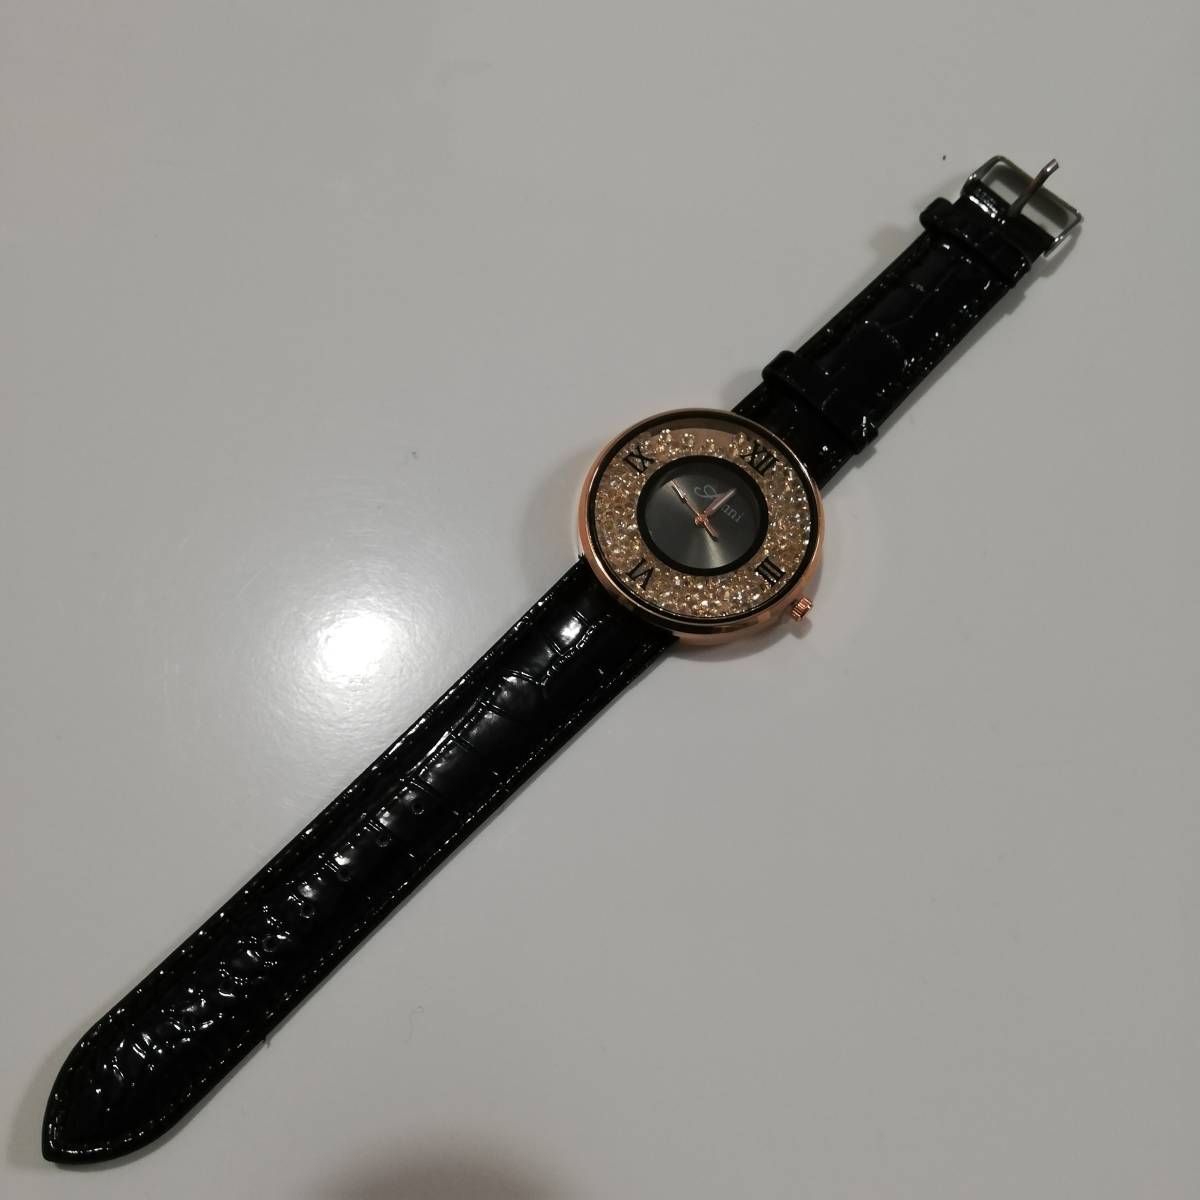  новый товар * покачивающийся Stone женский часы часы type вдавлено .* работа OK